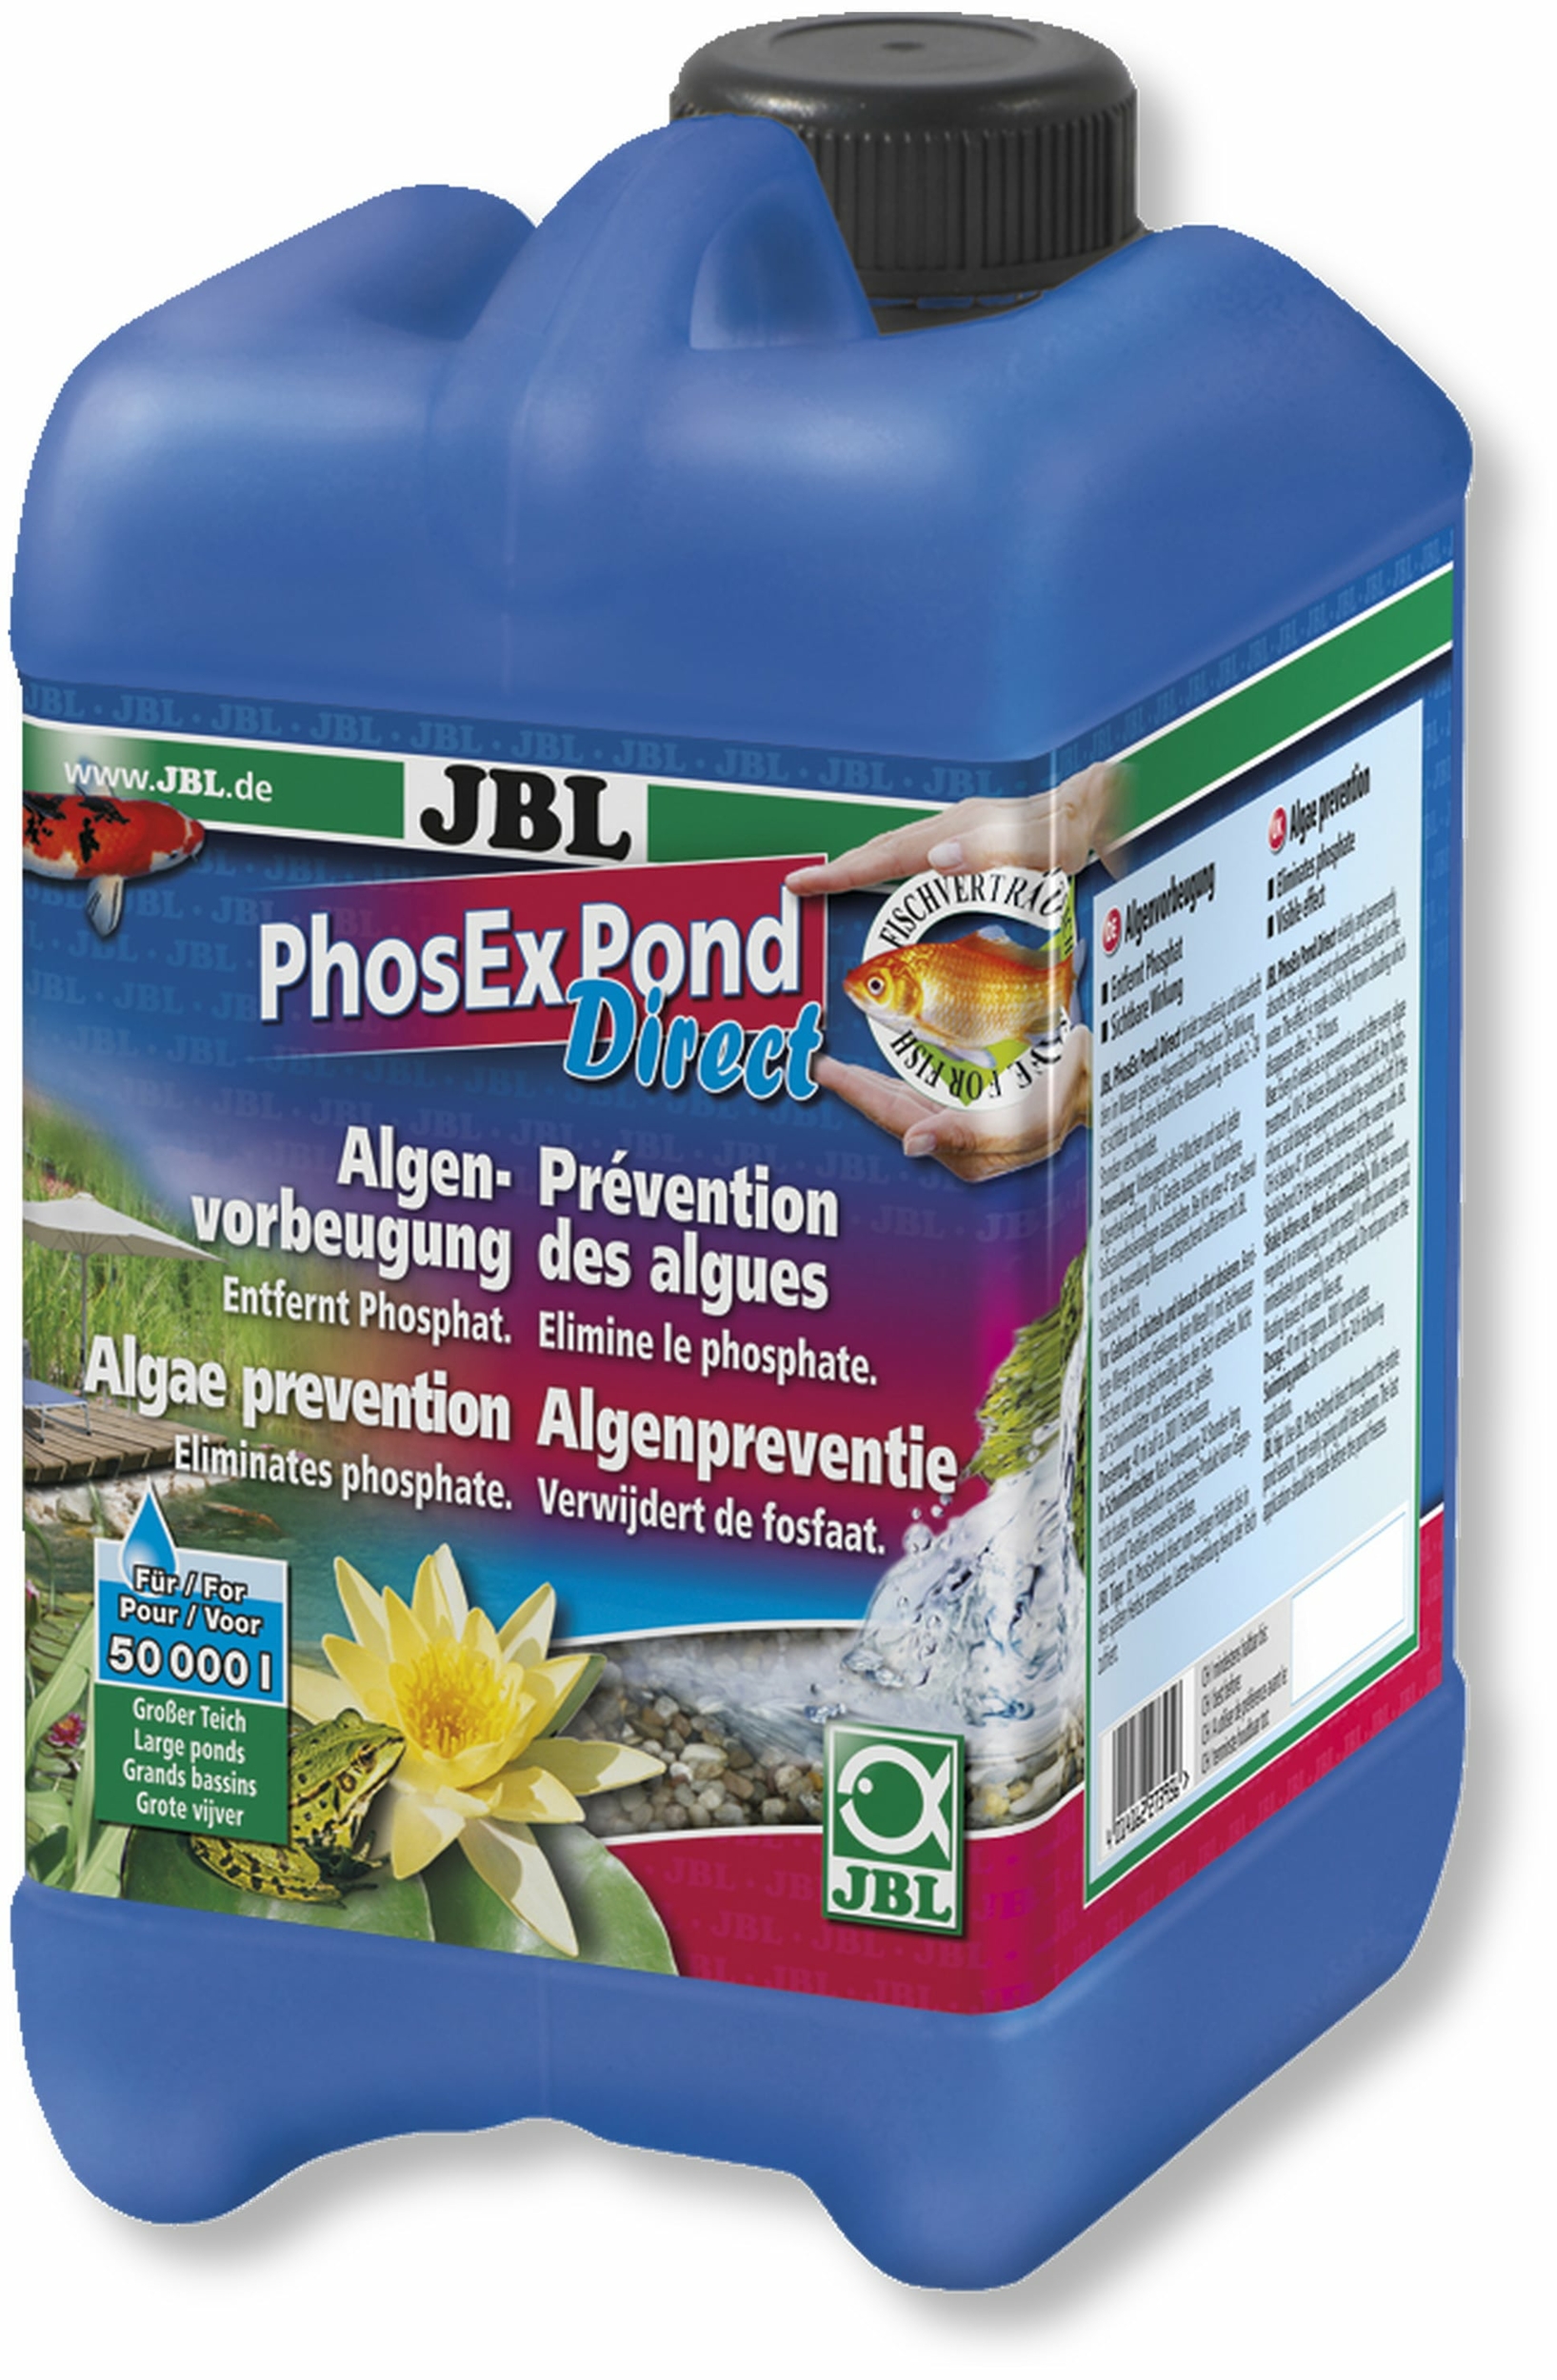 jbl-phosex-pond-direct-2-5-l-elimine-les-phosphates-afin-de-supprimer-les-algues-dans-les-bassins-jusqu-a-50000-l-min